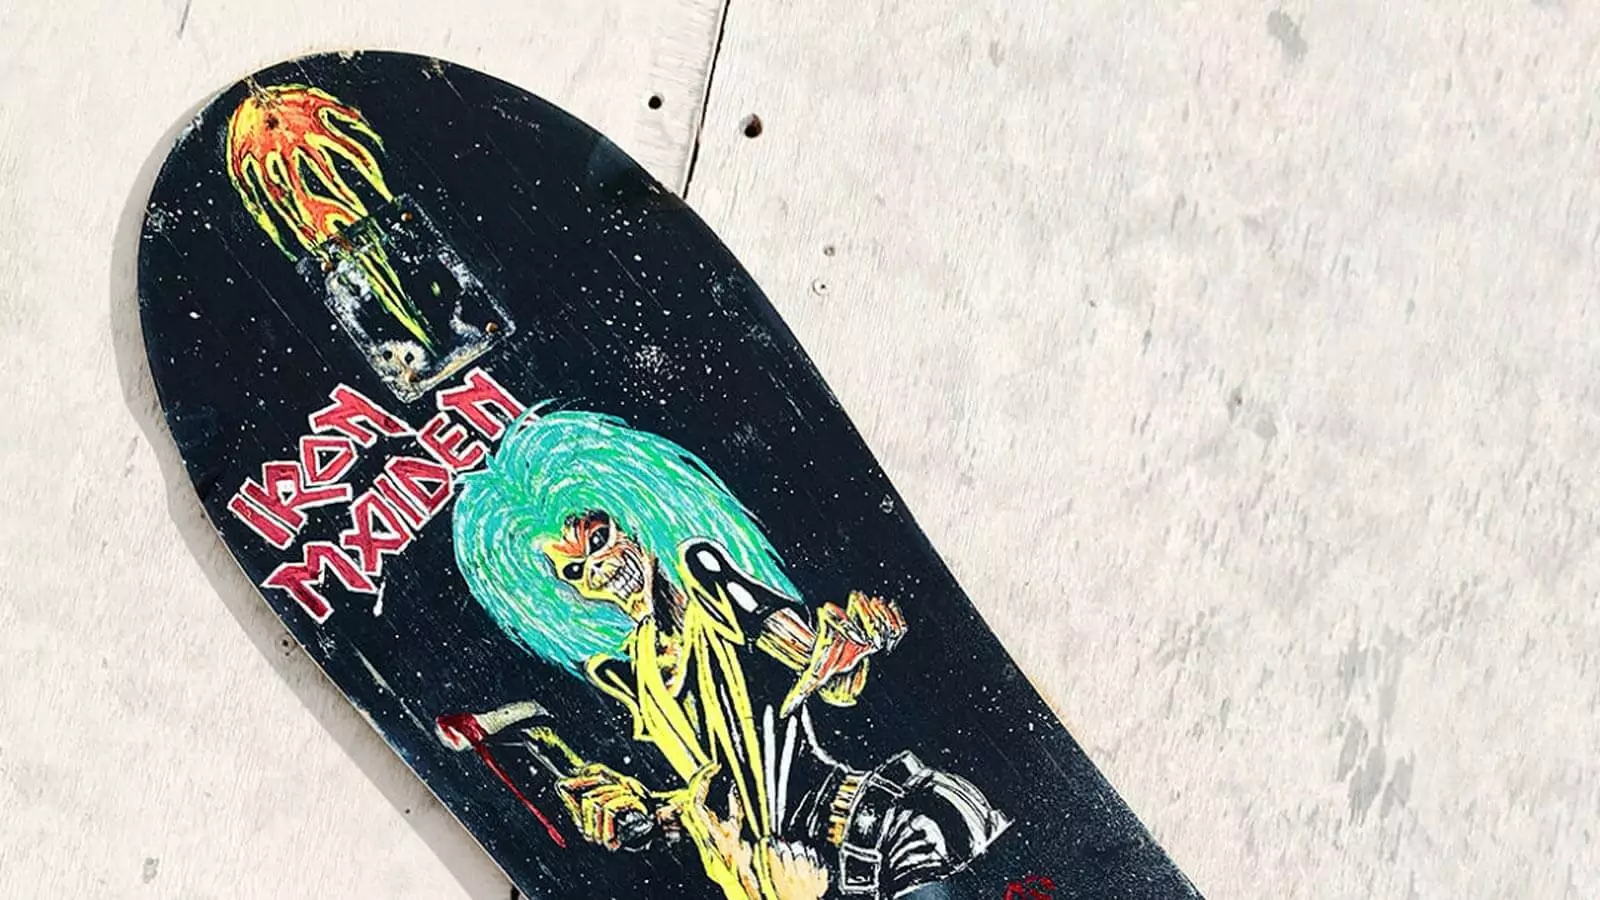 Tony Hawk discovers Kurt Cobain's skateboard